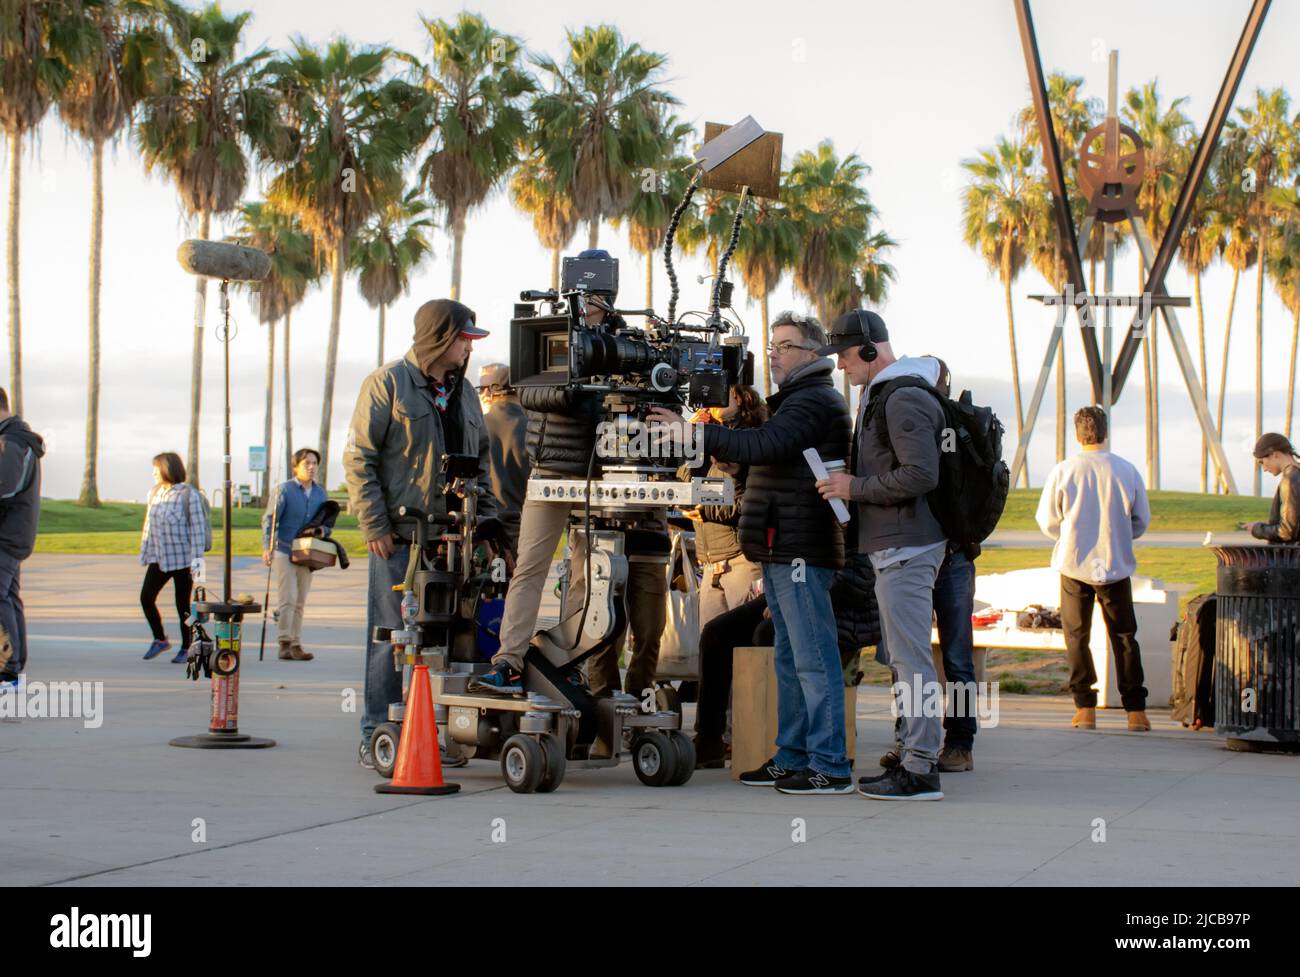 Das professionelle Hollywood-Filmset hat Kamerateams und Schauspieler, die sich auf die Szene vorbereiten, bevor sie vor Ort in Los Angeles Filmen Stockfoto